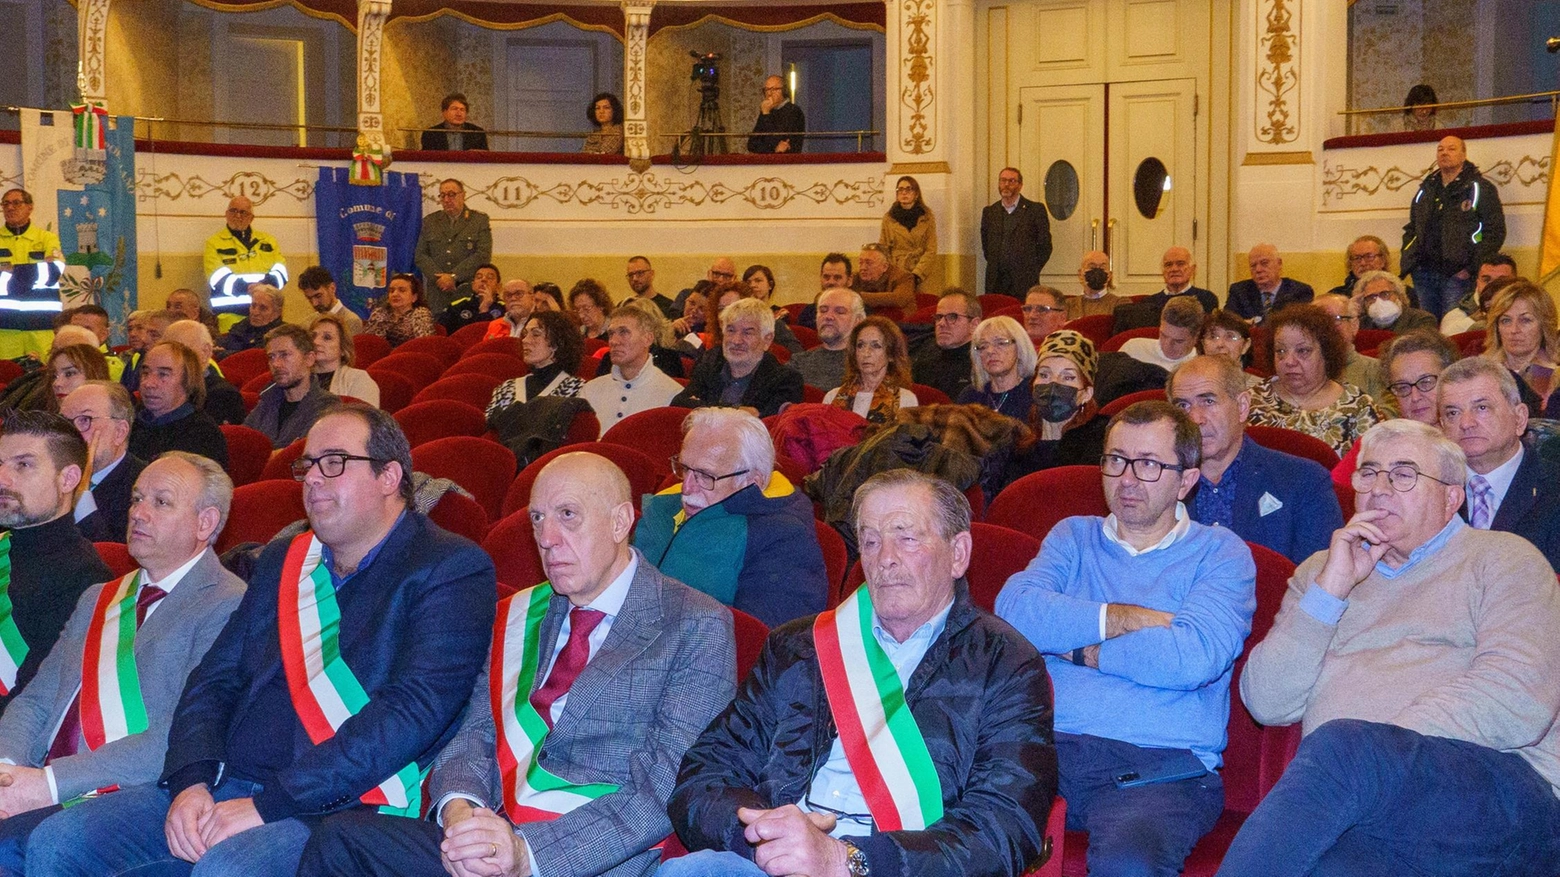 Garfagnana nella provincia di Lucca. Le celebrazioni per il centenario: "Territorio diventato protagonista"